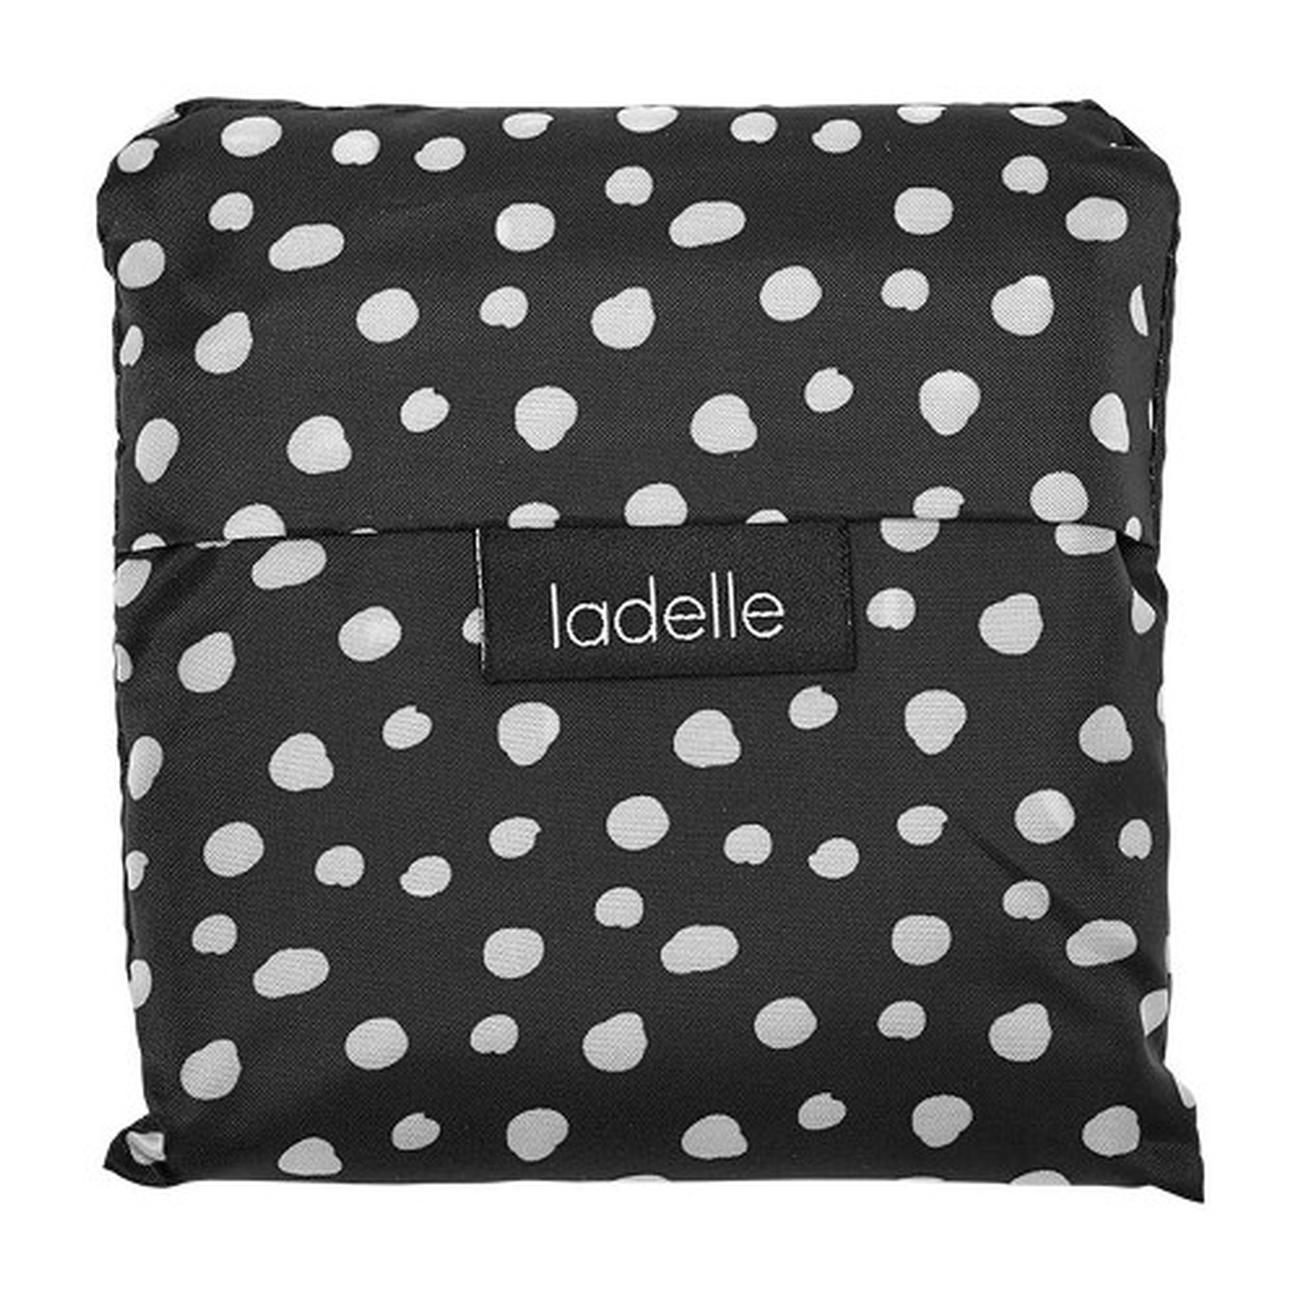 ladelle-eco-foldable-tote-bag-so-last-season - Ladelle Eco Recycled Bag So Last Season